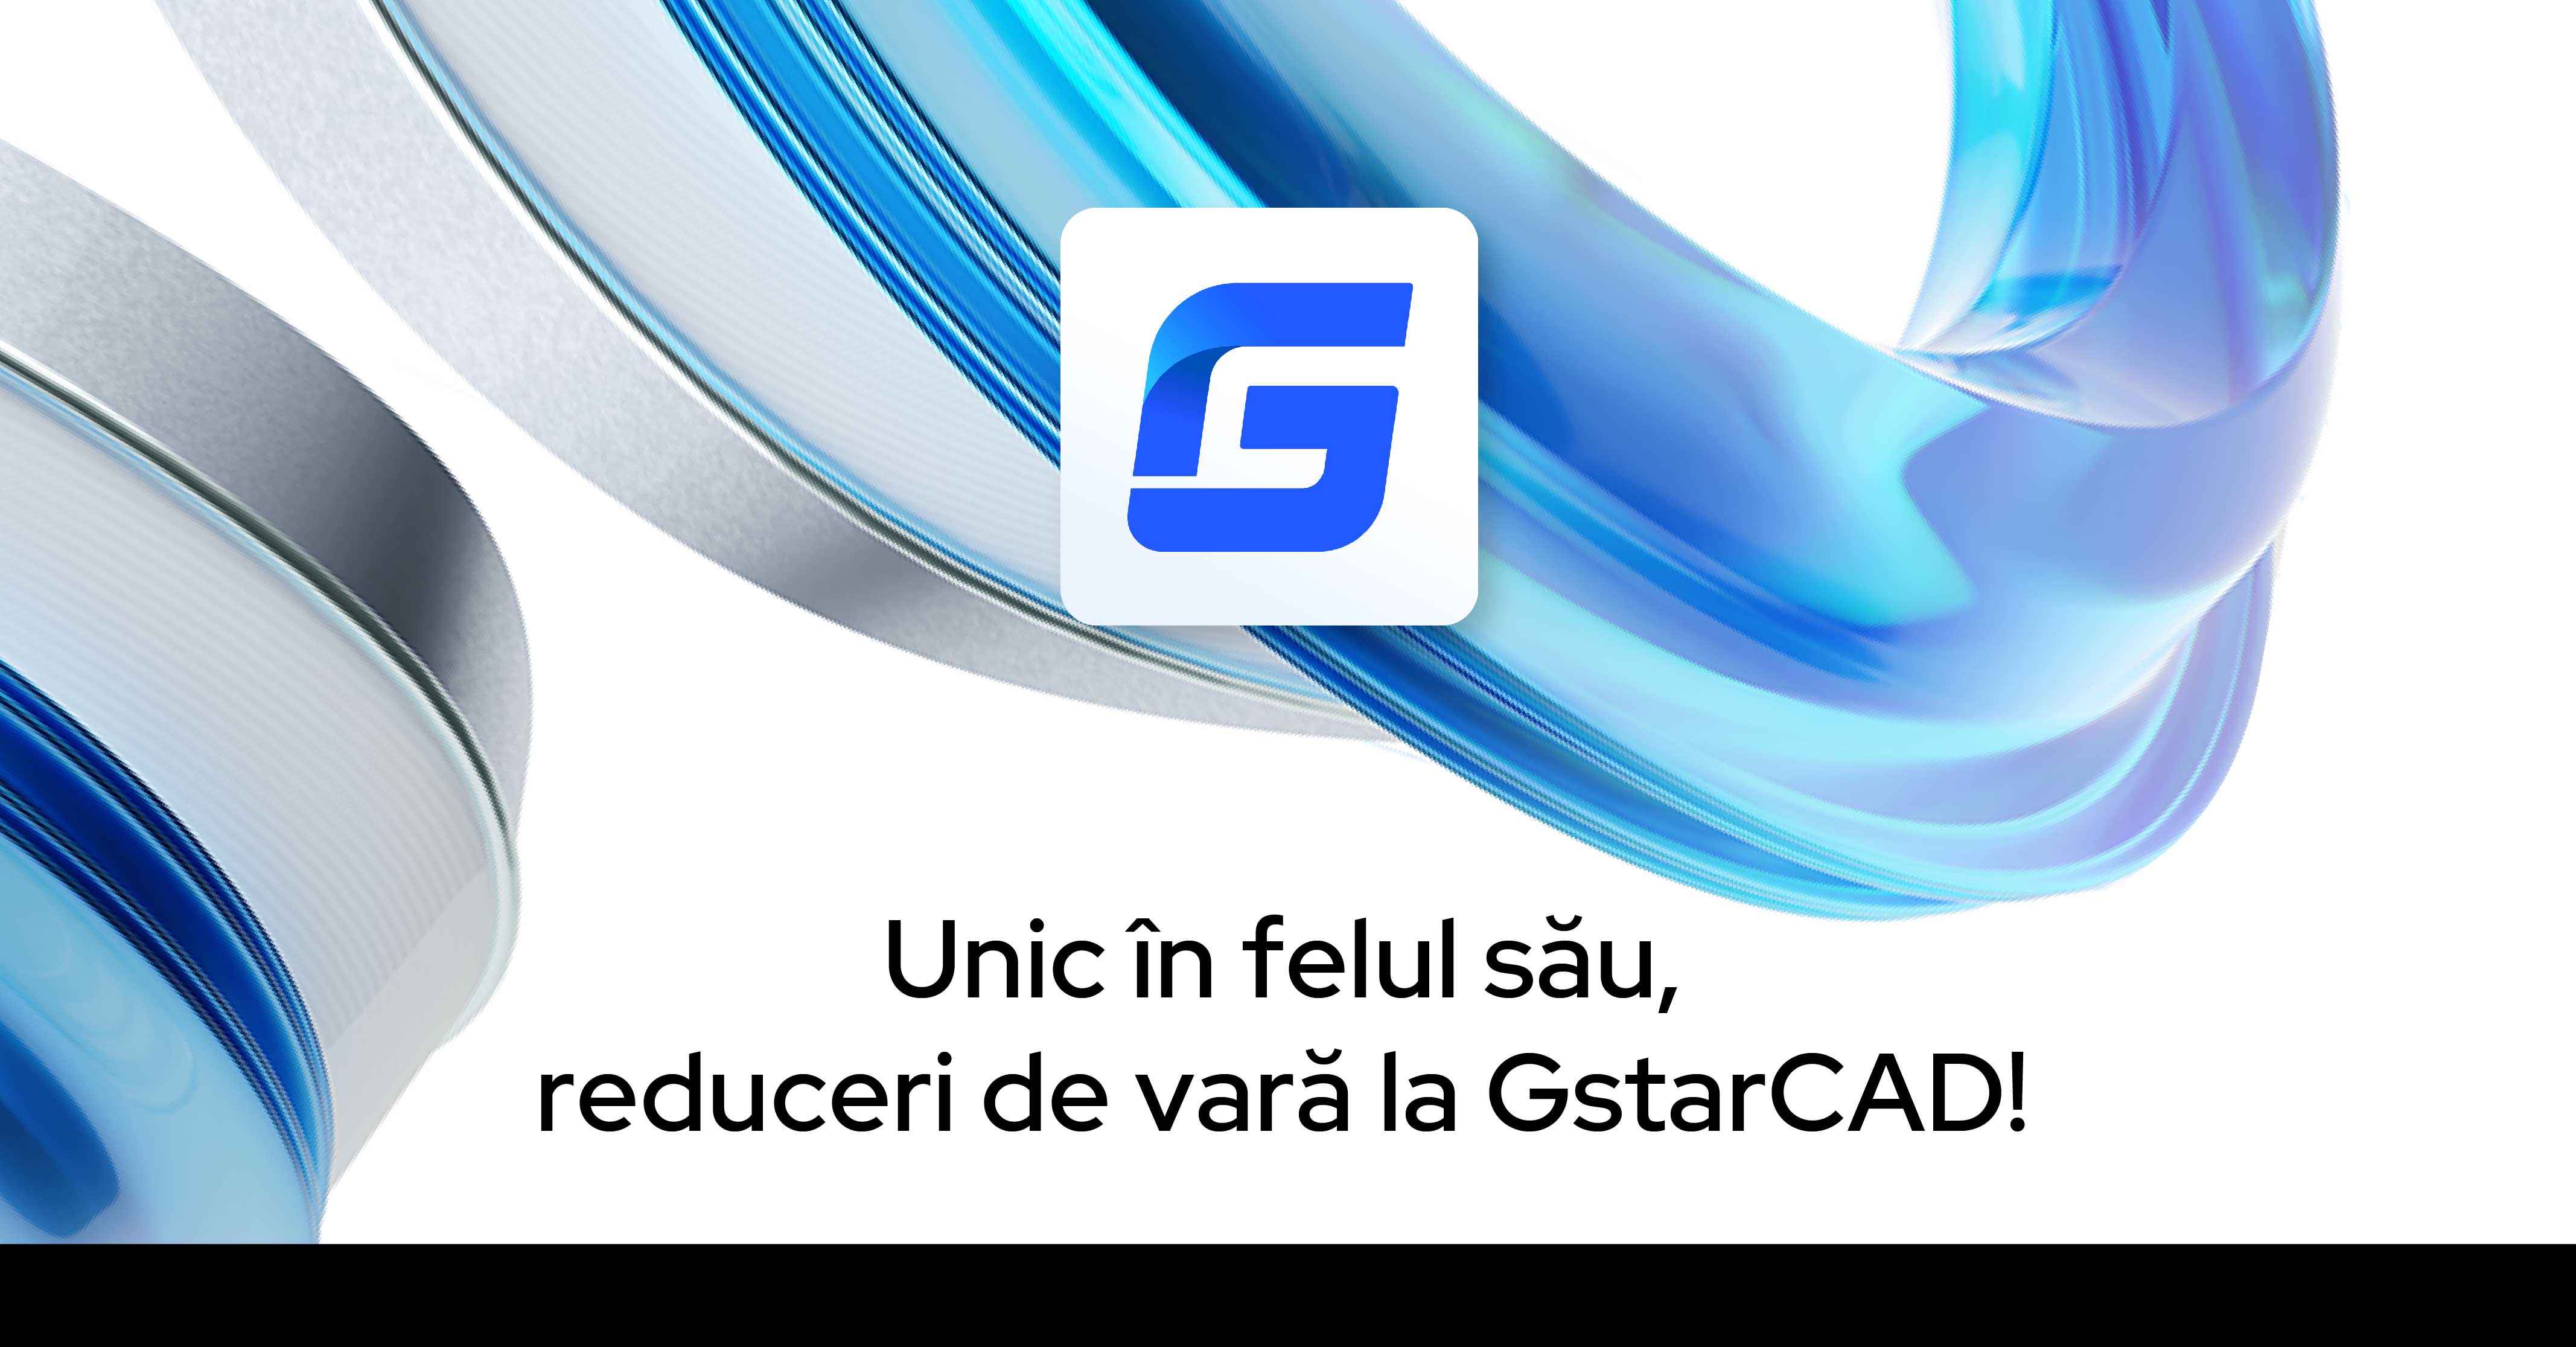 Reduceri unice de vară la GstarCAD!